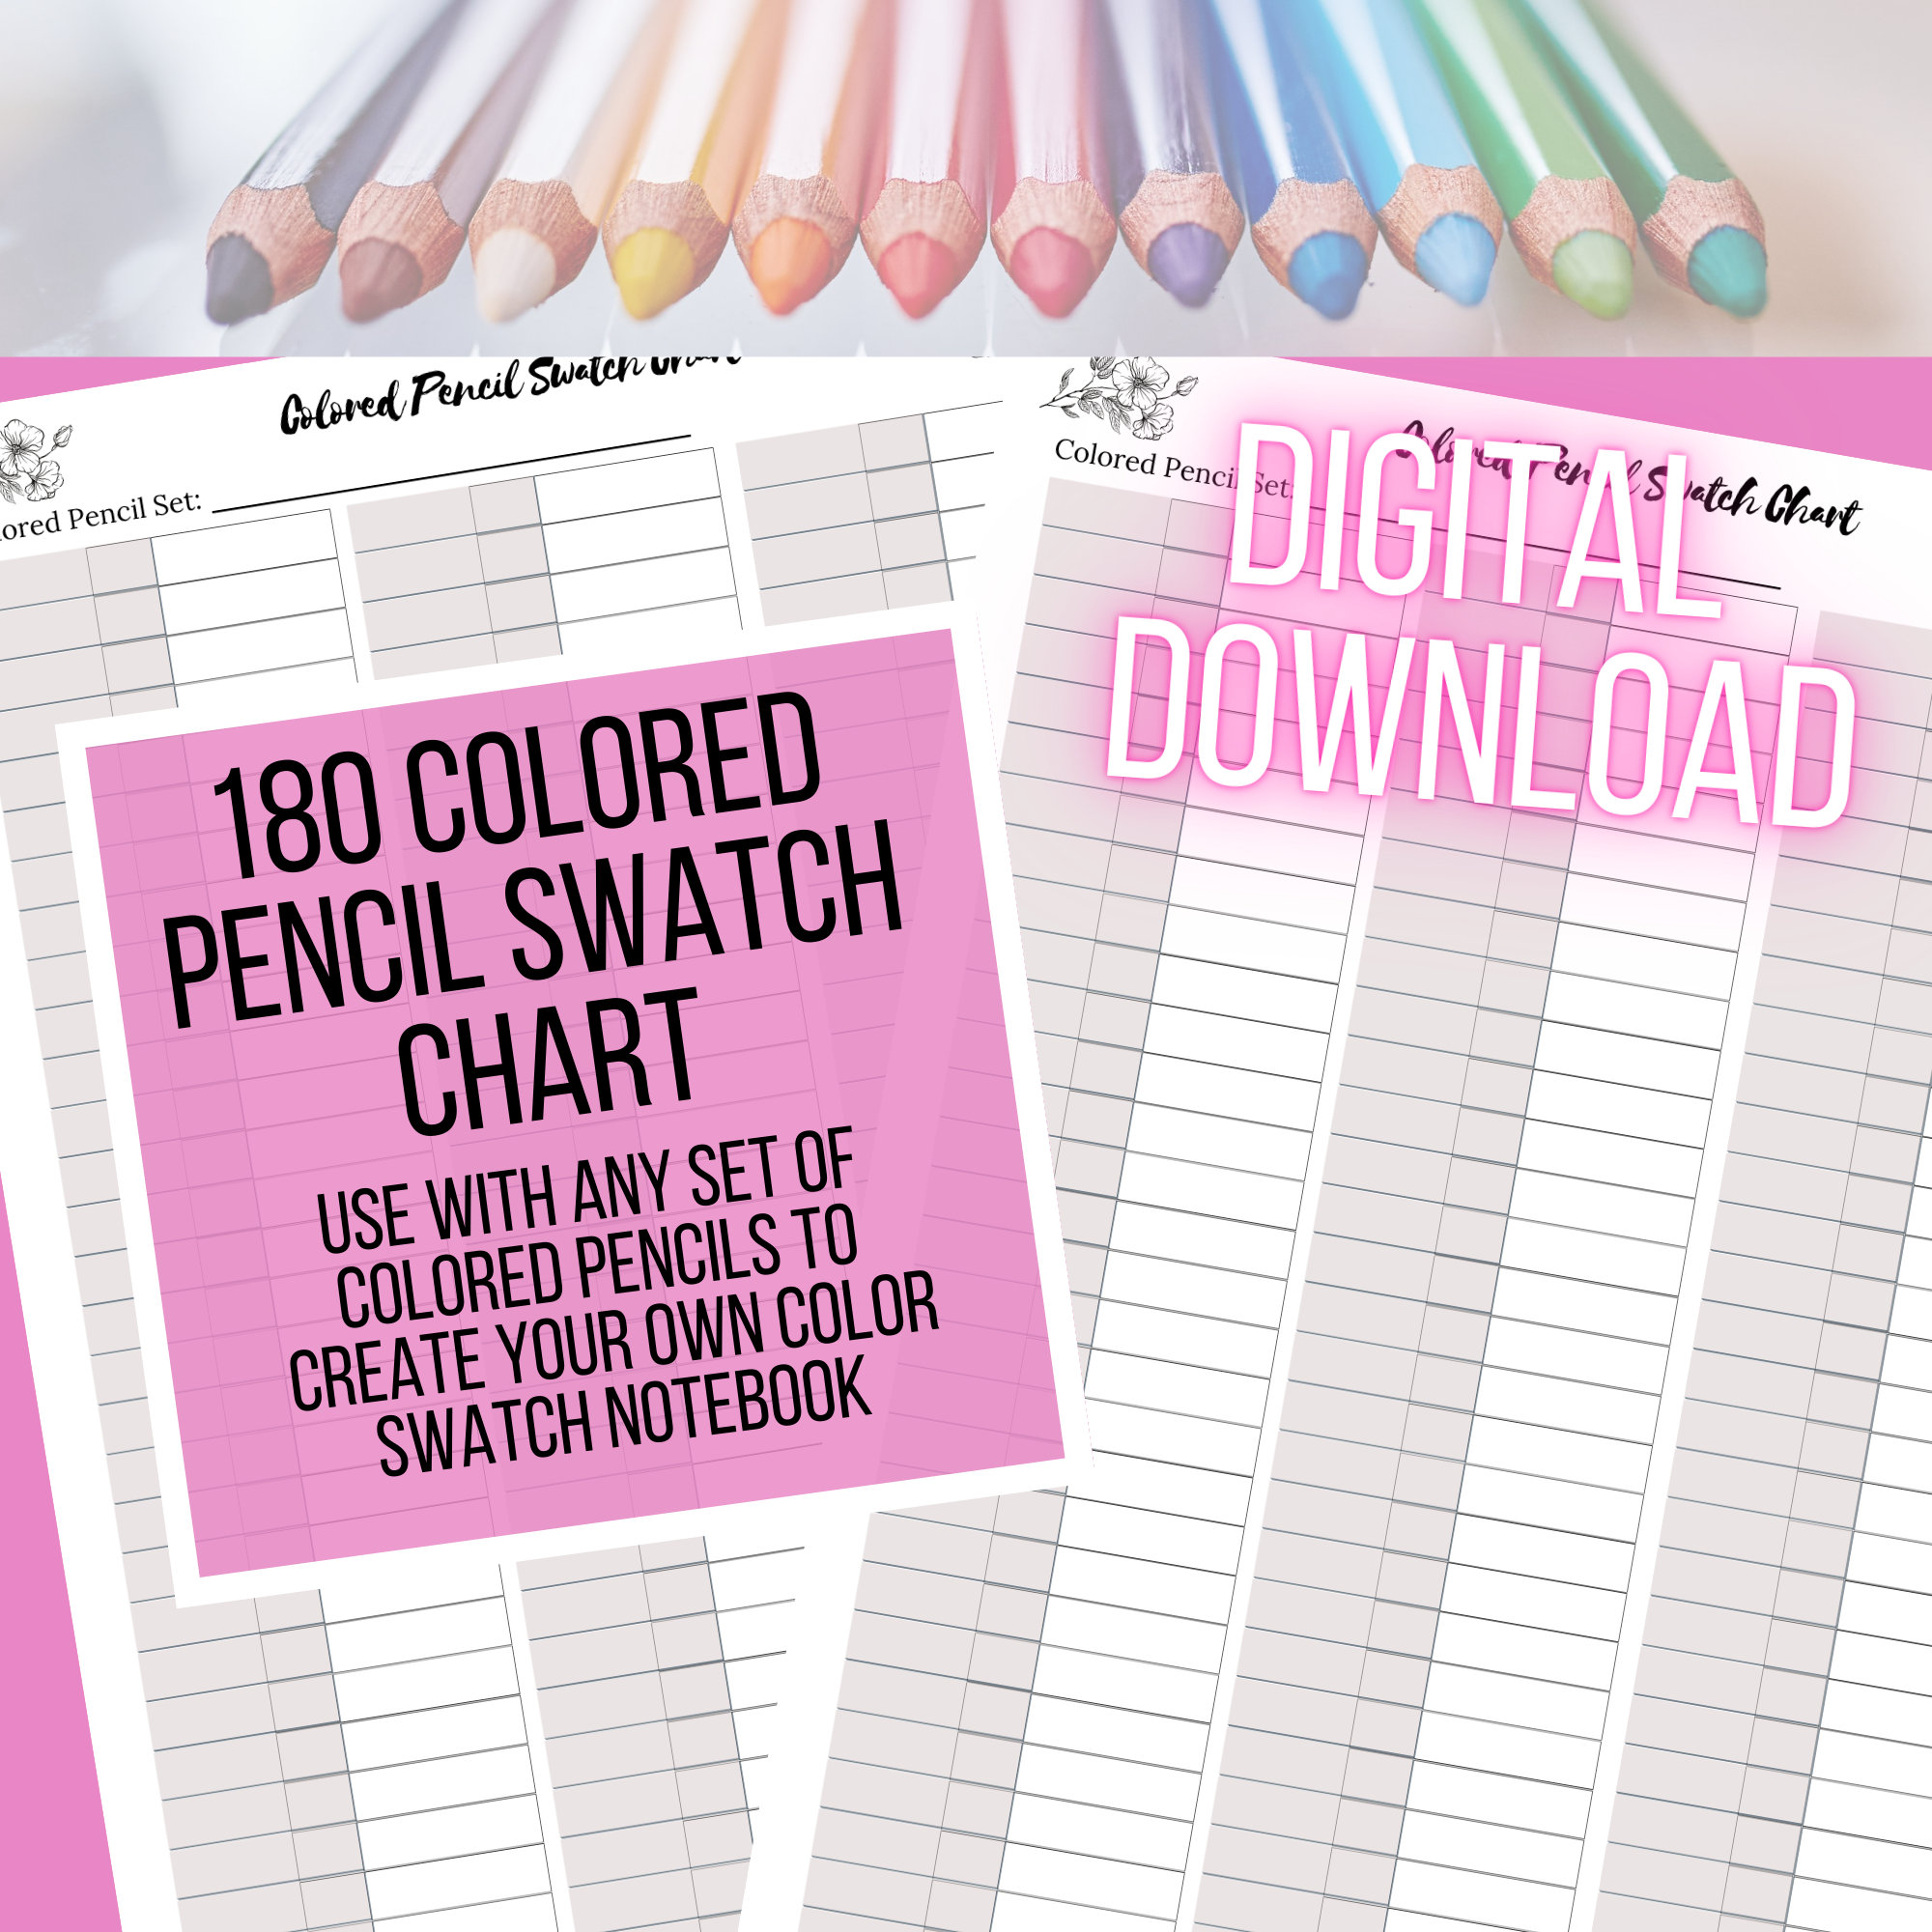 180 Colored Pencil Swatch Chart front & Back Portrait Orientation